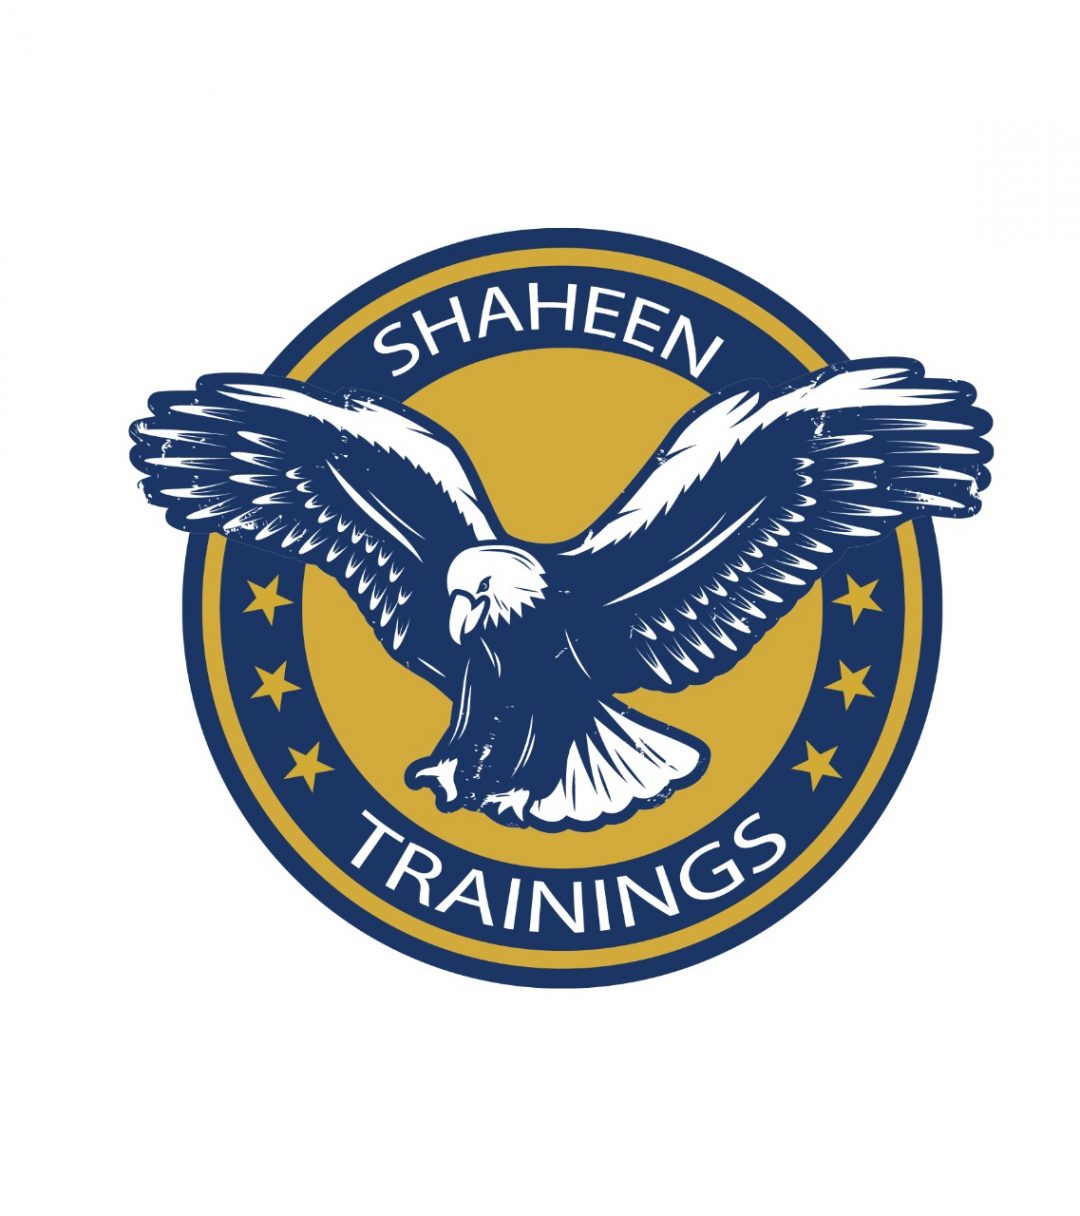 Shaheen Training